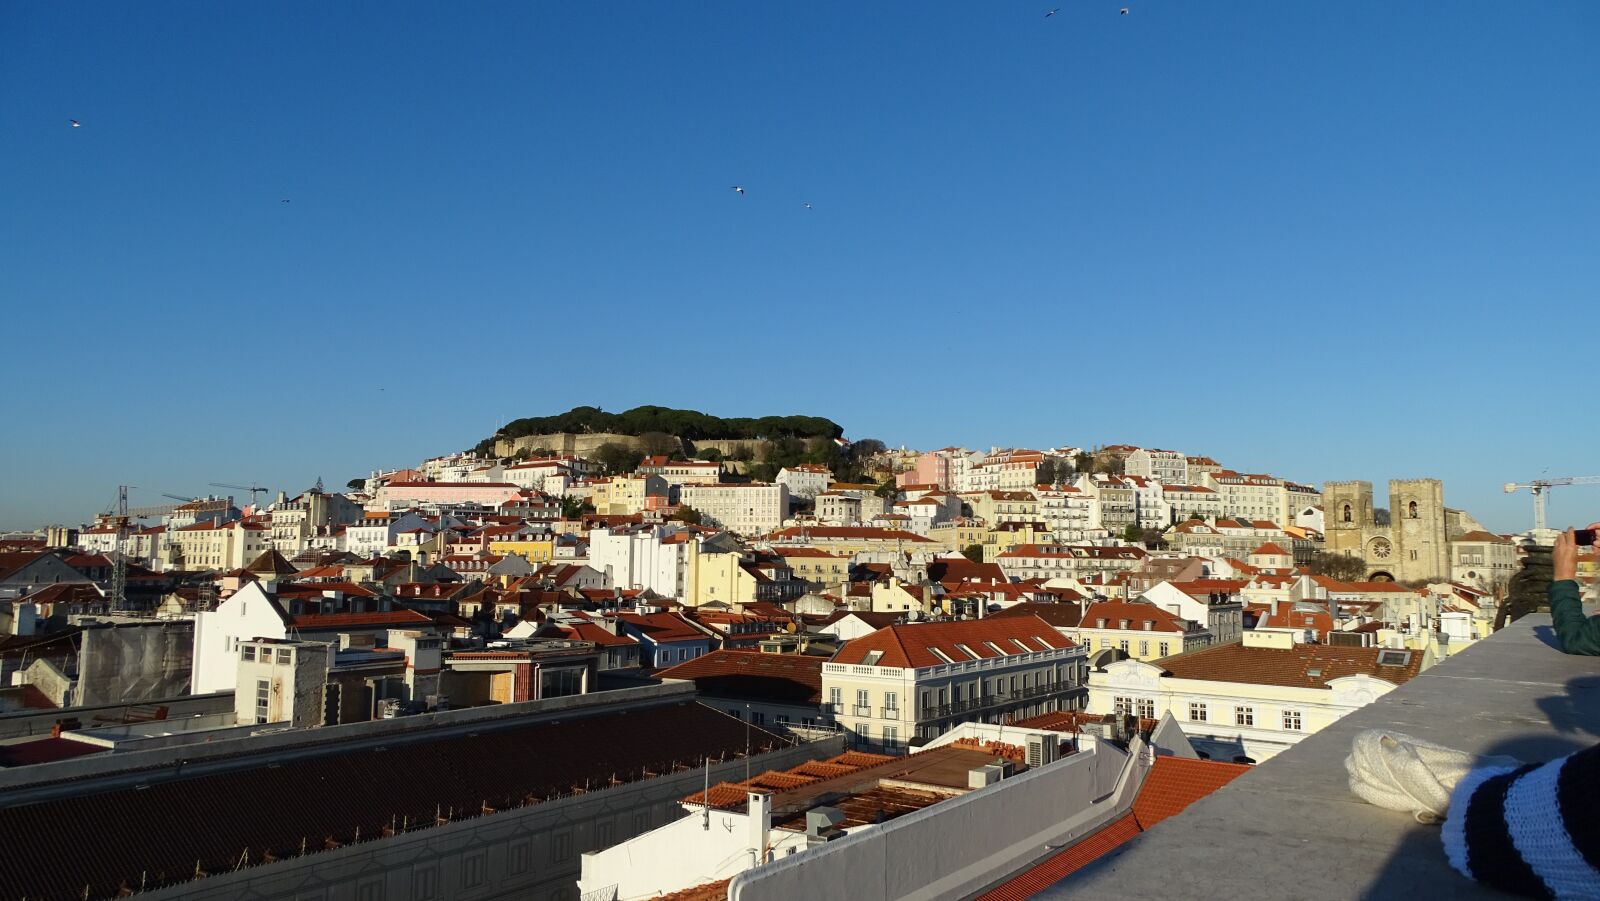 Sony Cyber-shot DSC-HX400V sample photo. Lisbon, castle, portugal photography